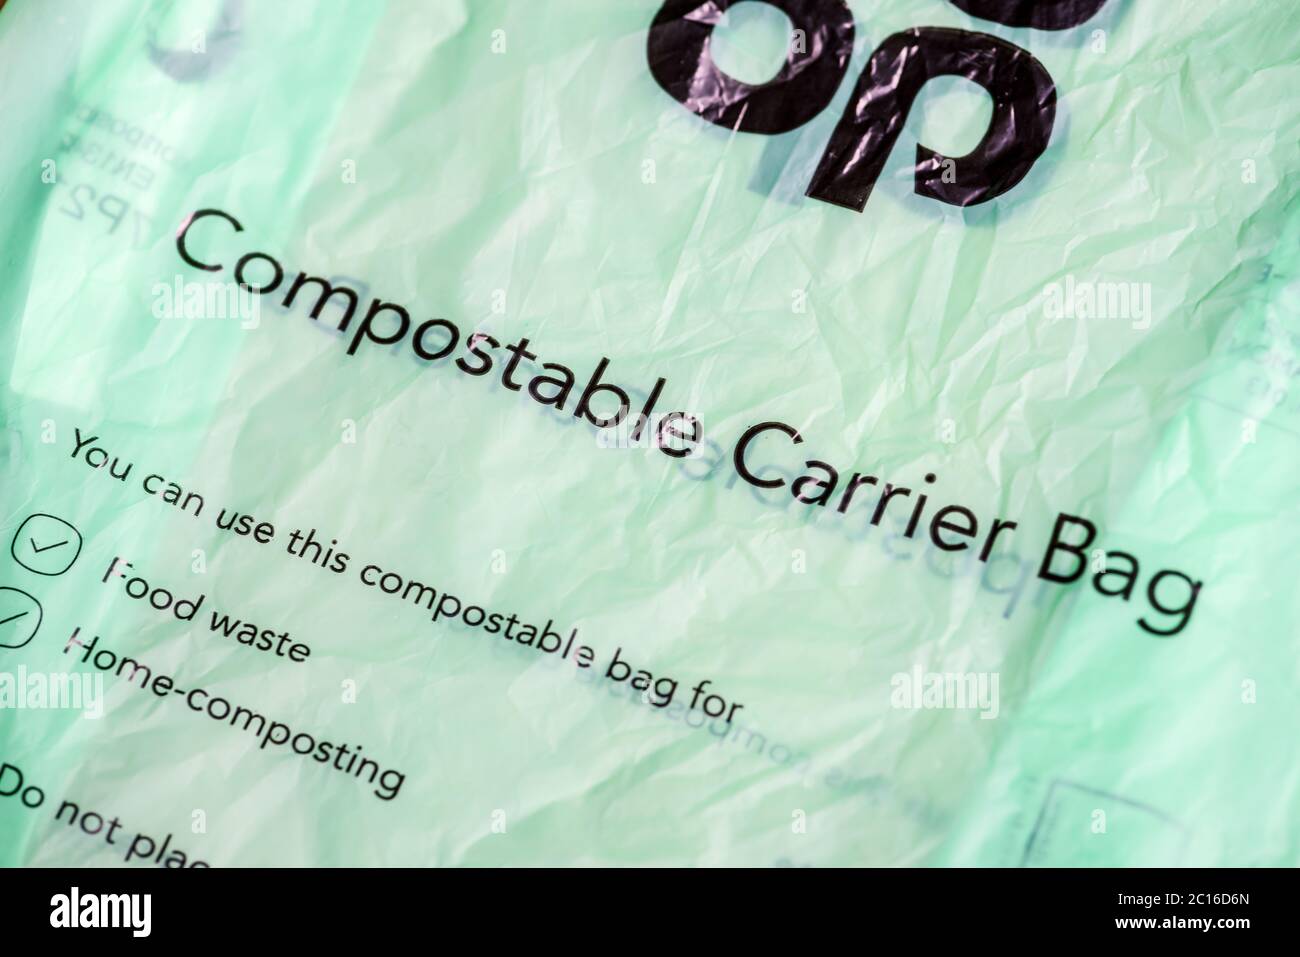 Sac de transport compostable de Co-Op à utiliser à la maison pour les déchets alimentaires et la composition à domicile Banque D'Images